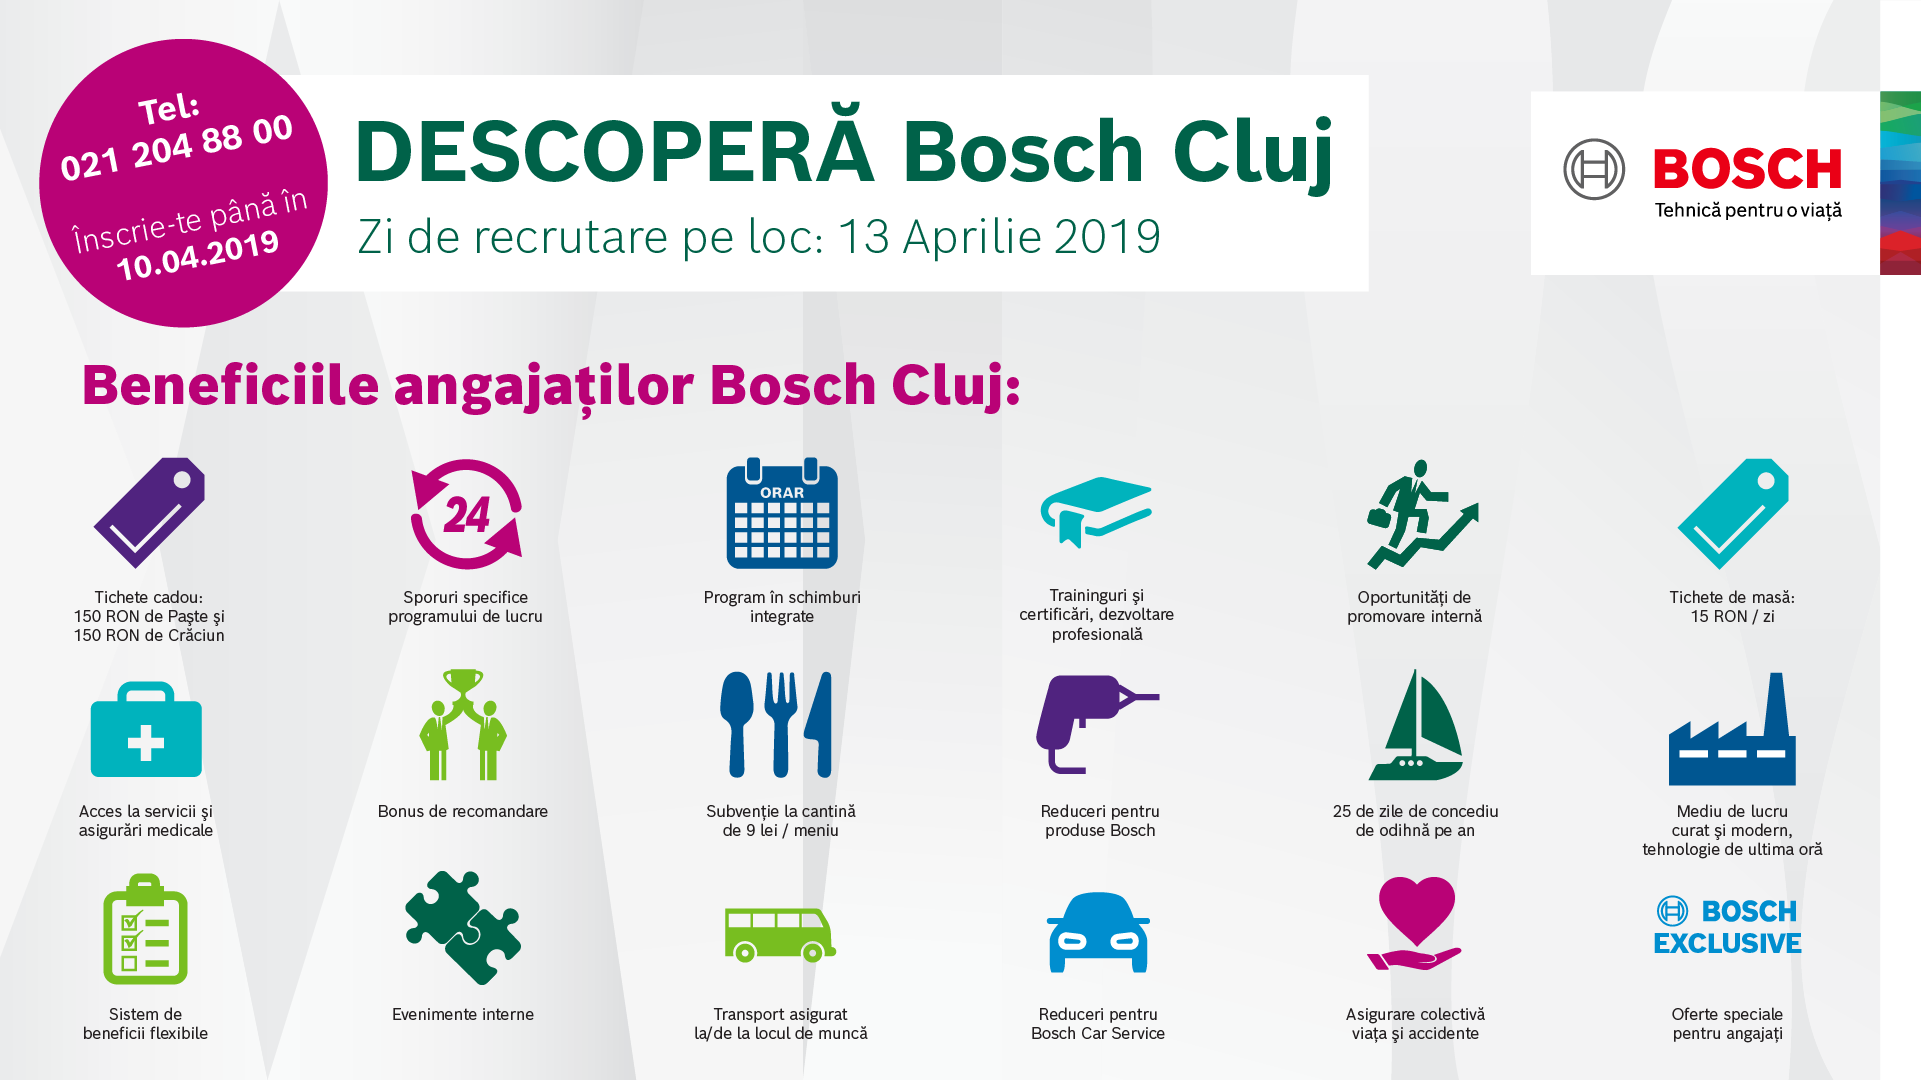 Descoperă Bosch Cluj Bosch Te Invită La Ziua Recrutării In 13